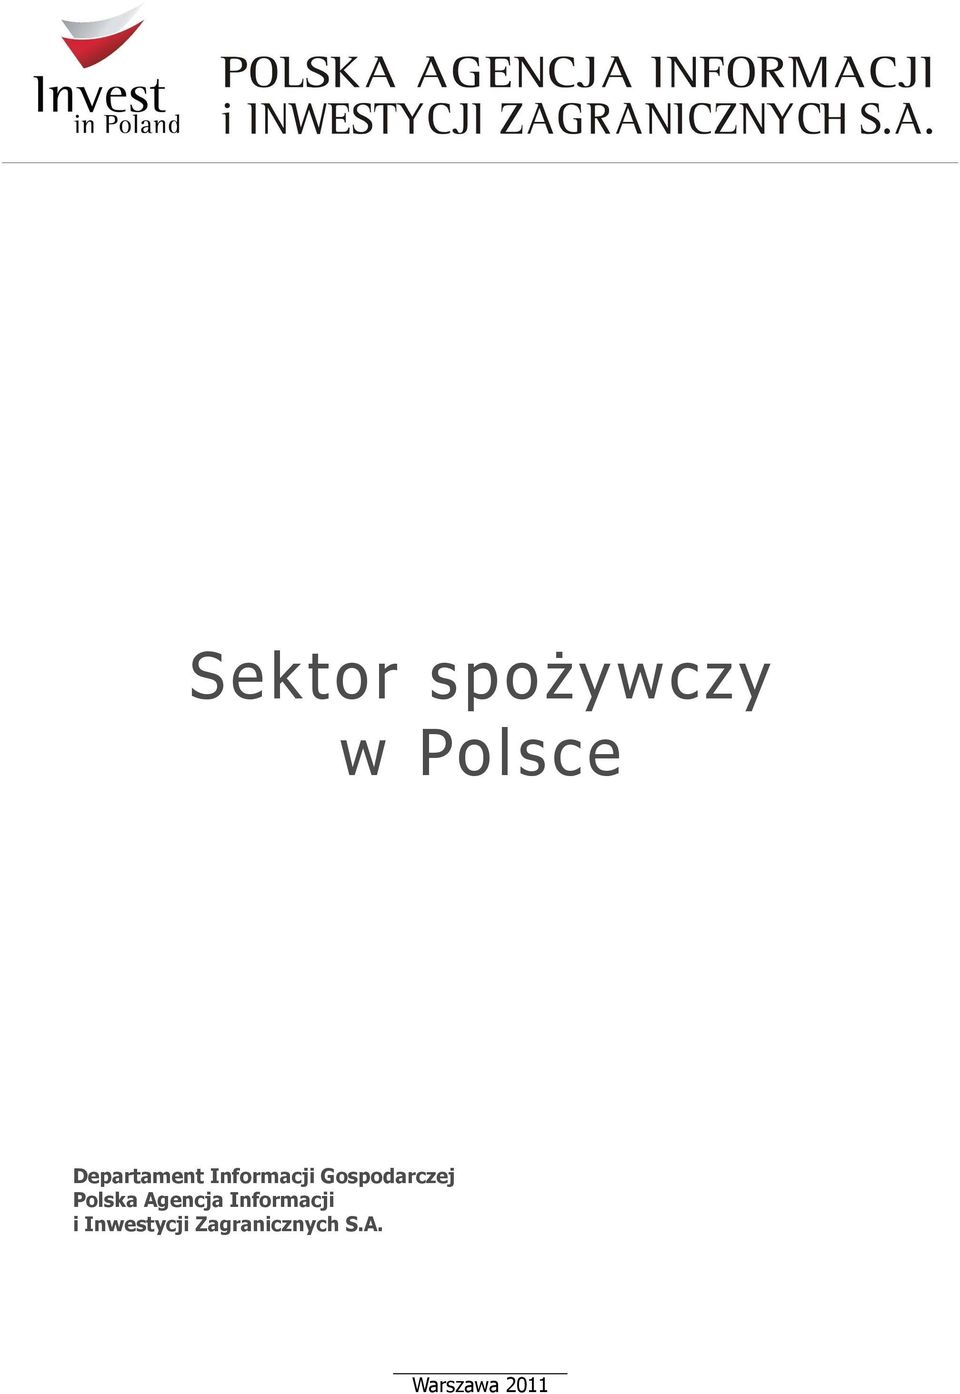 Gospodarczej Polska Agencja